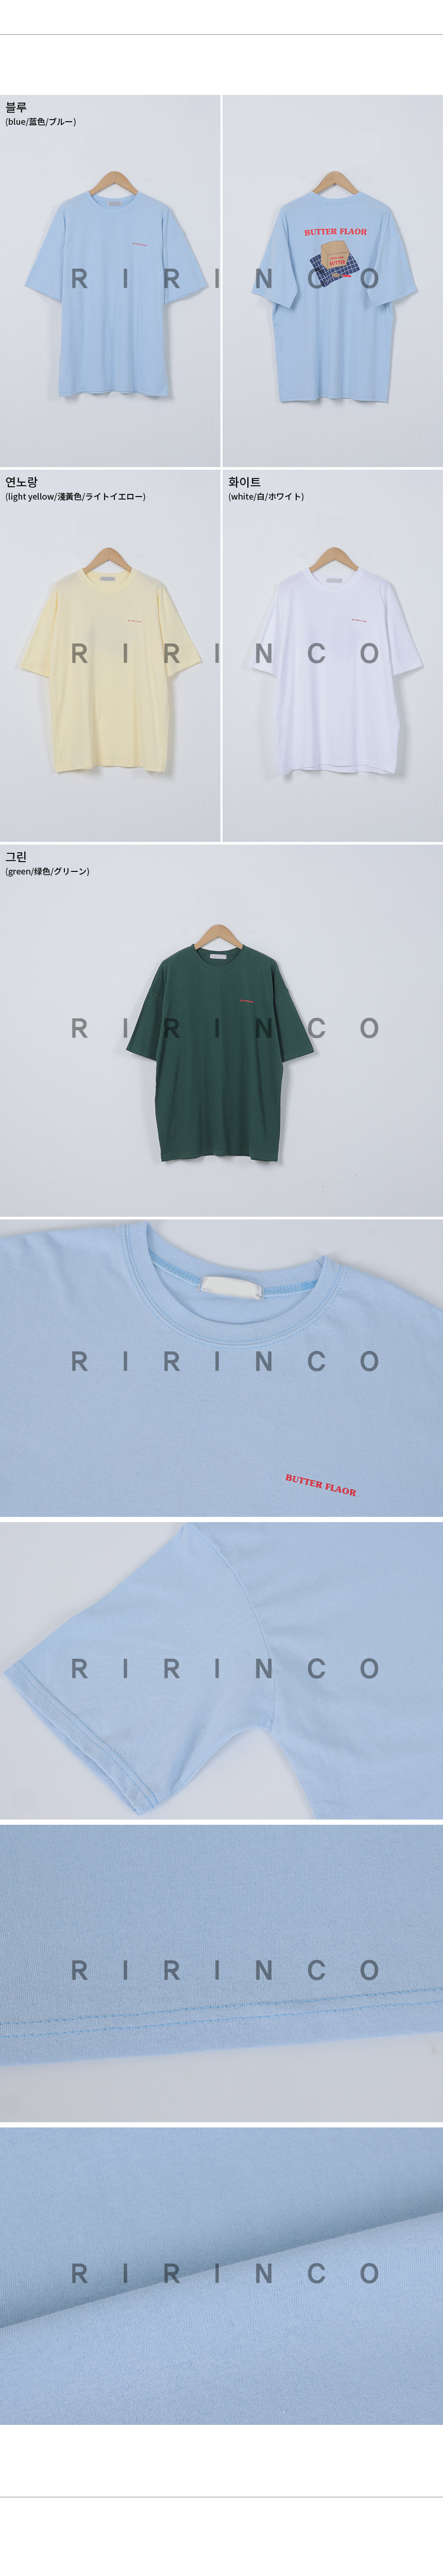 RIRINCO バックプリントラウンドネック半袖Tシャツ